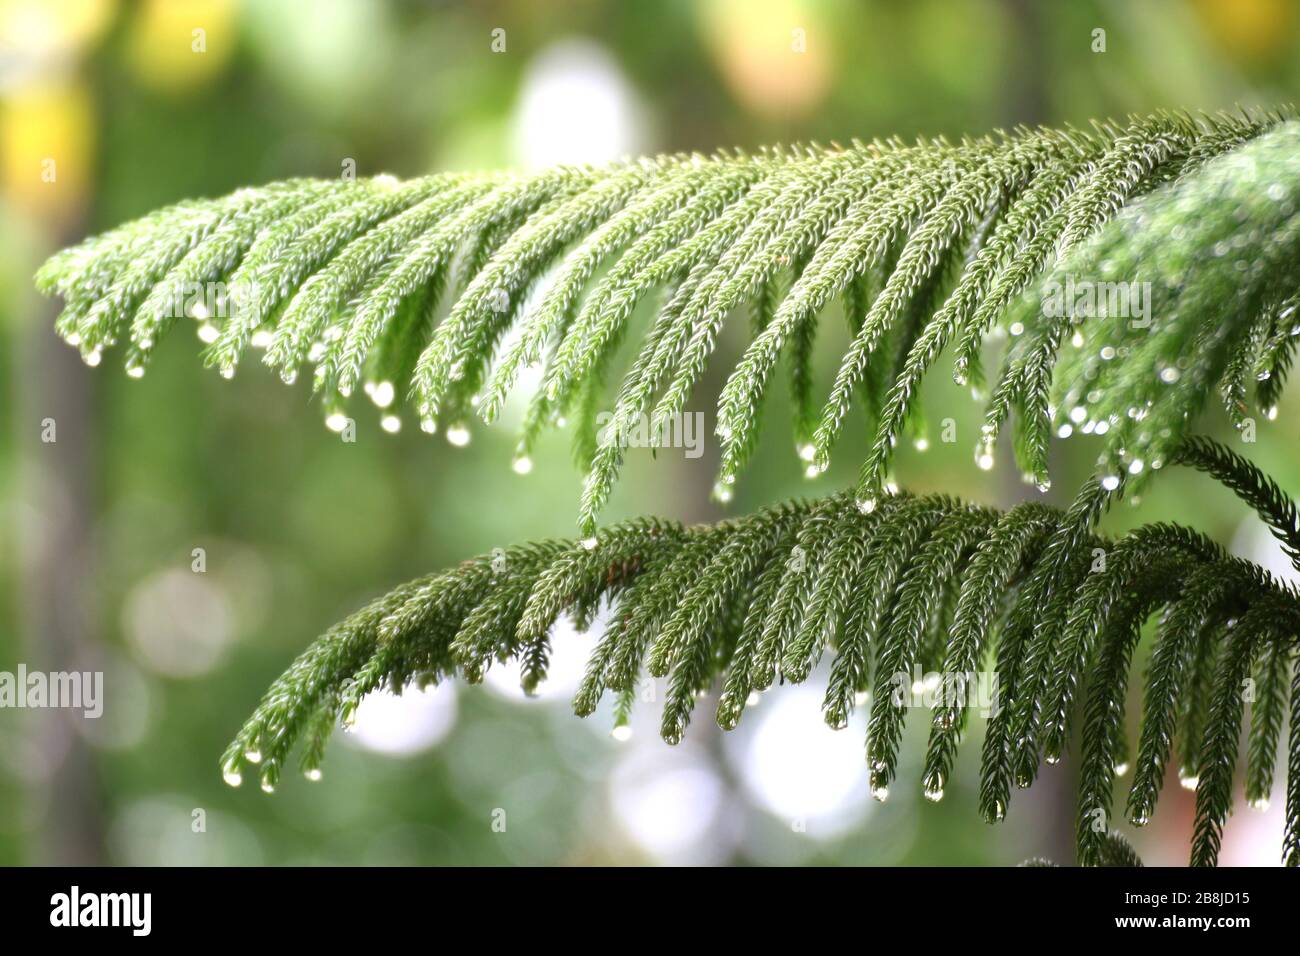 PIN de l'île Norfolk, nature feuilles vertes fraîches pin de l'île Norfolk avec eau de goutte fraîche (foyer sélectif) Banque D'Images